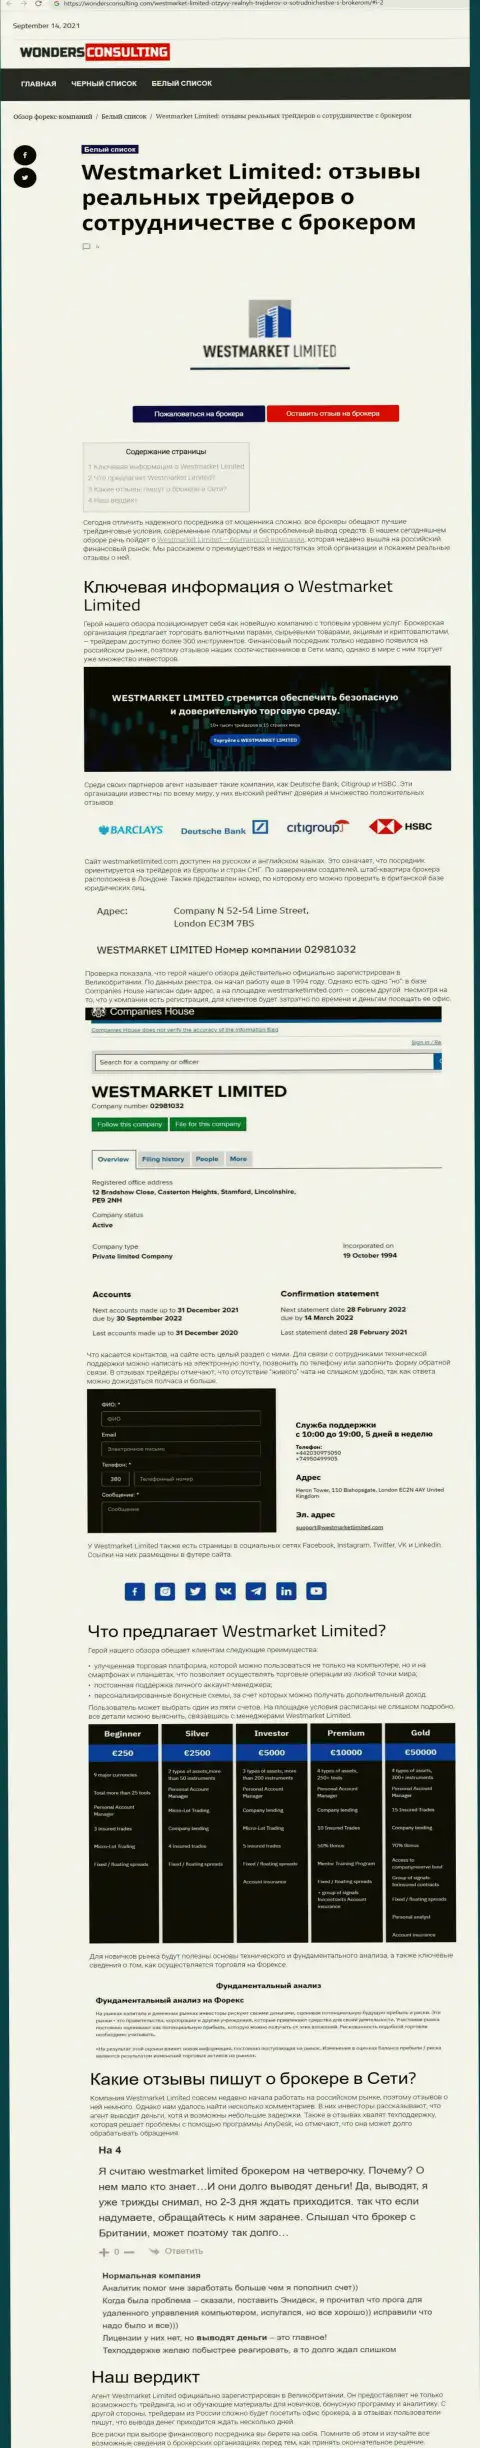 Статья о форекс дилинговой компании WestMarketLimited на сайте вондерконсалтинг ком